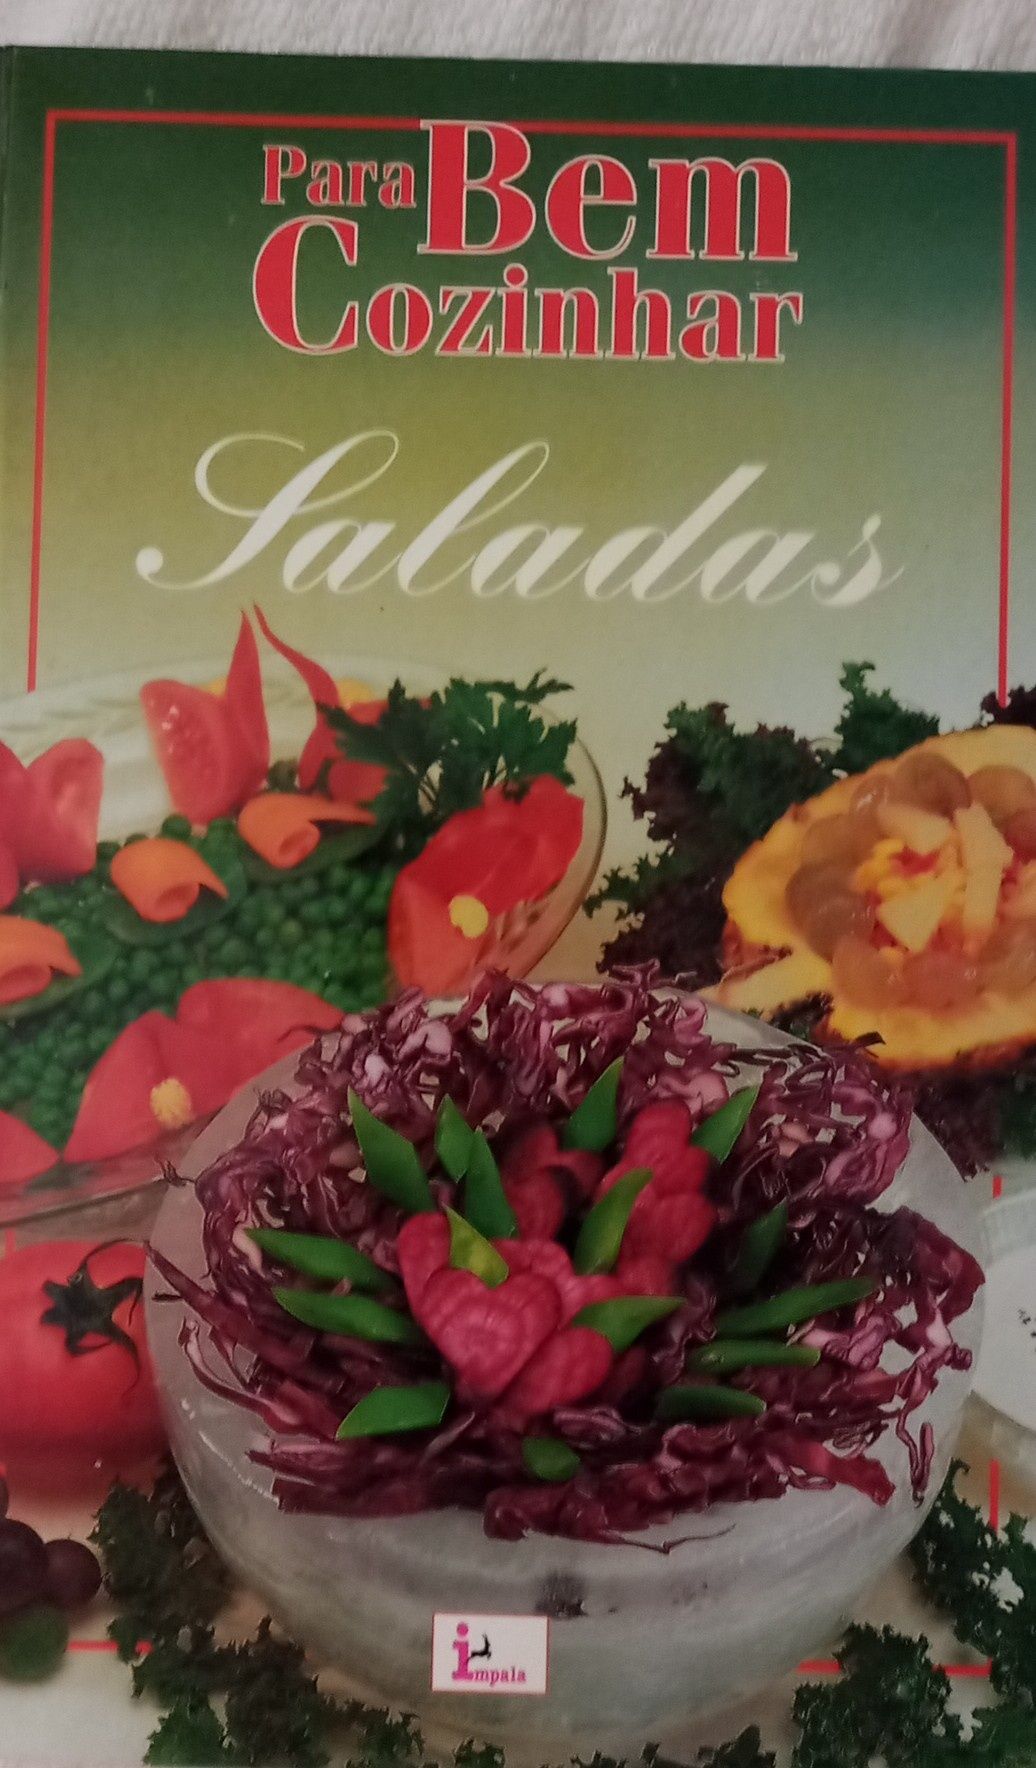 Livro para preparar saladas